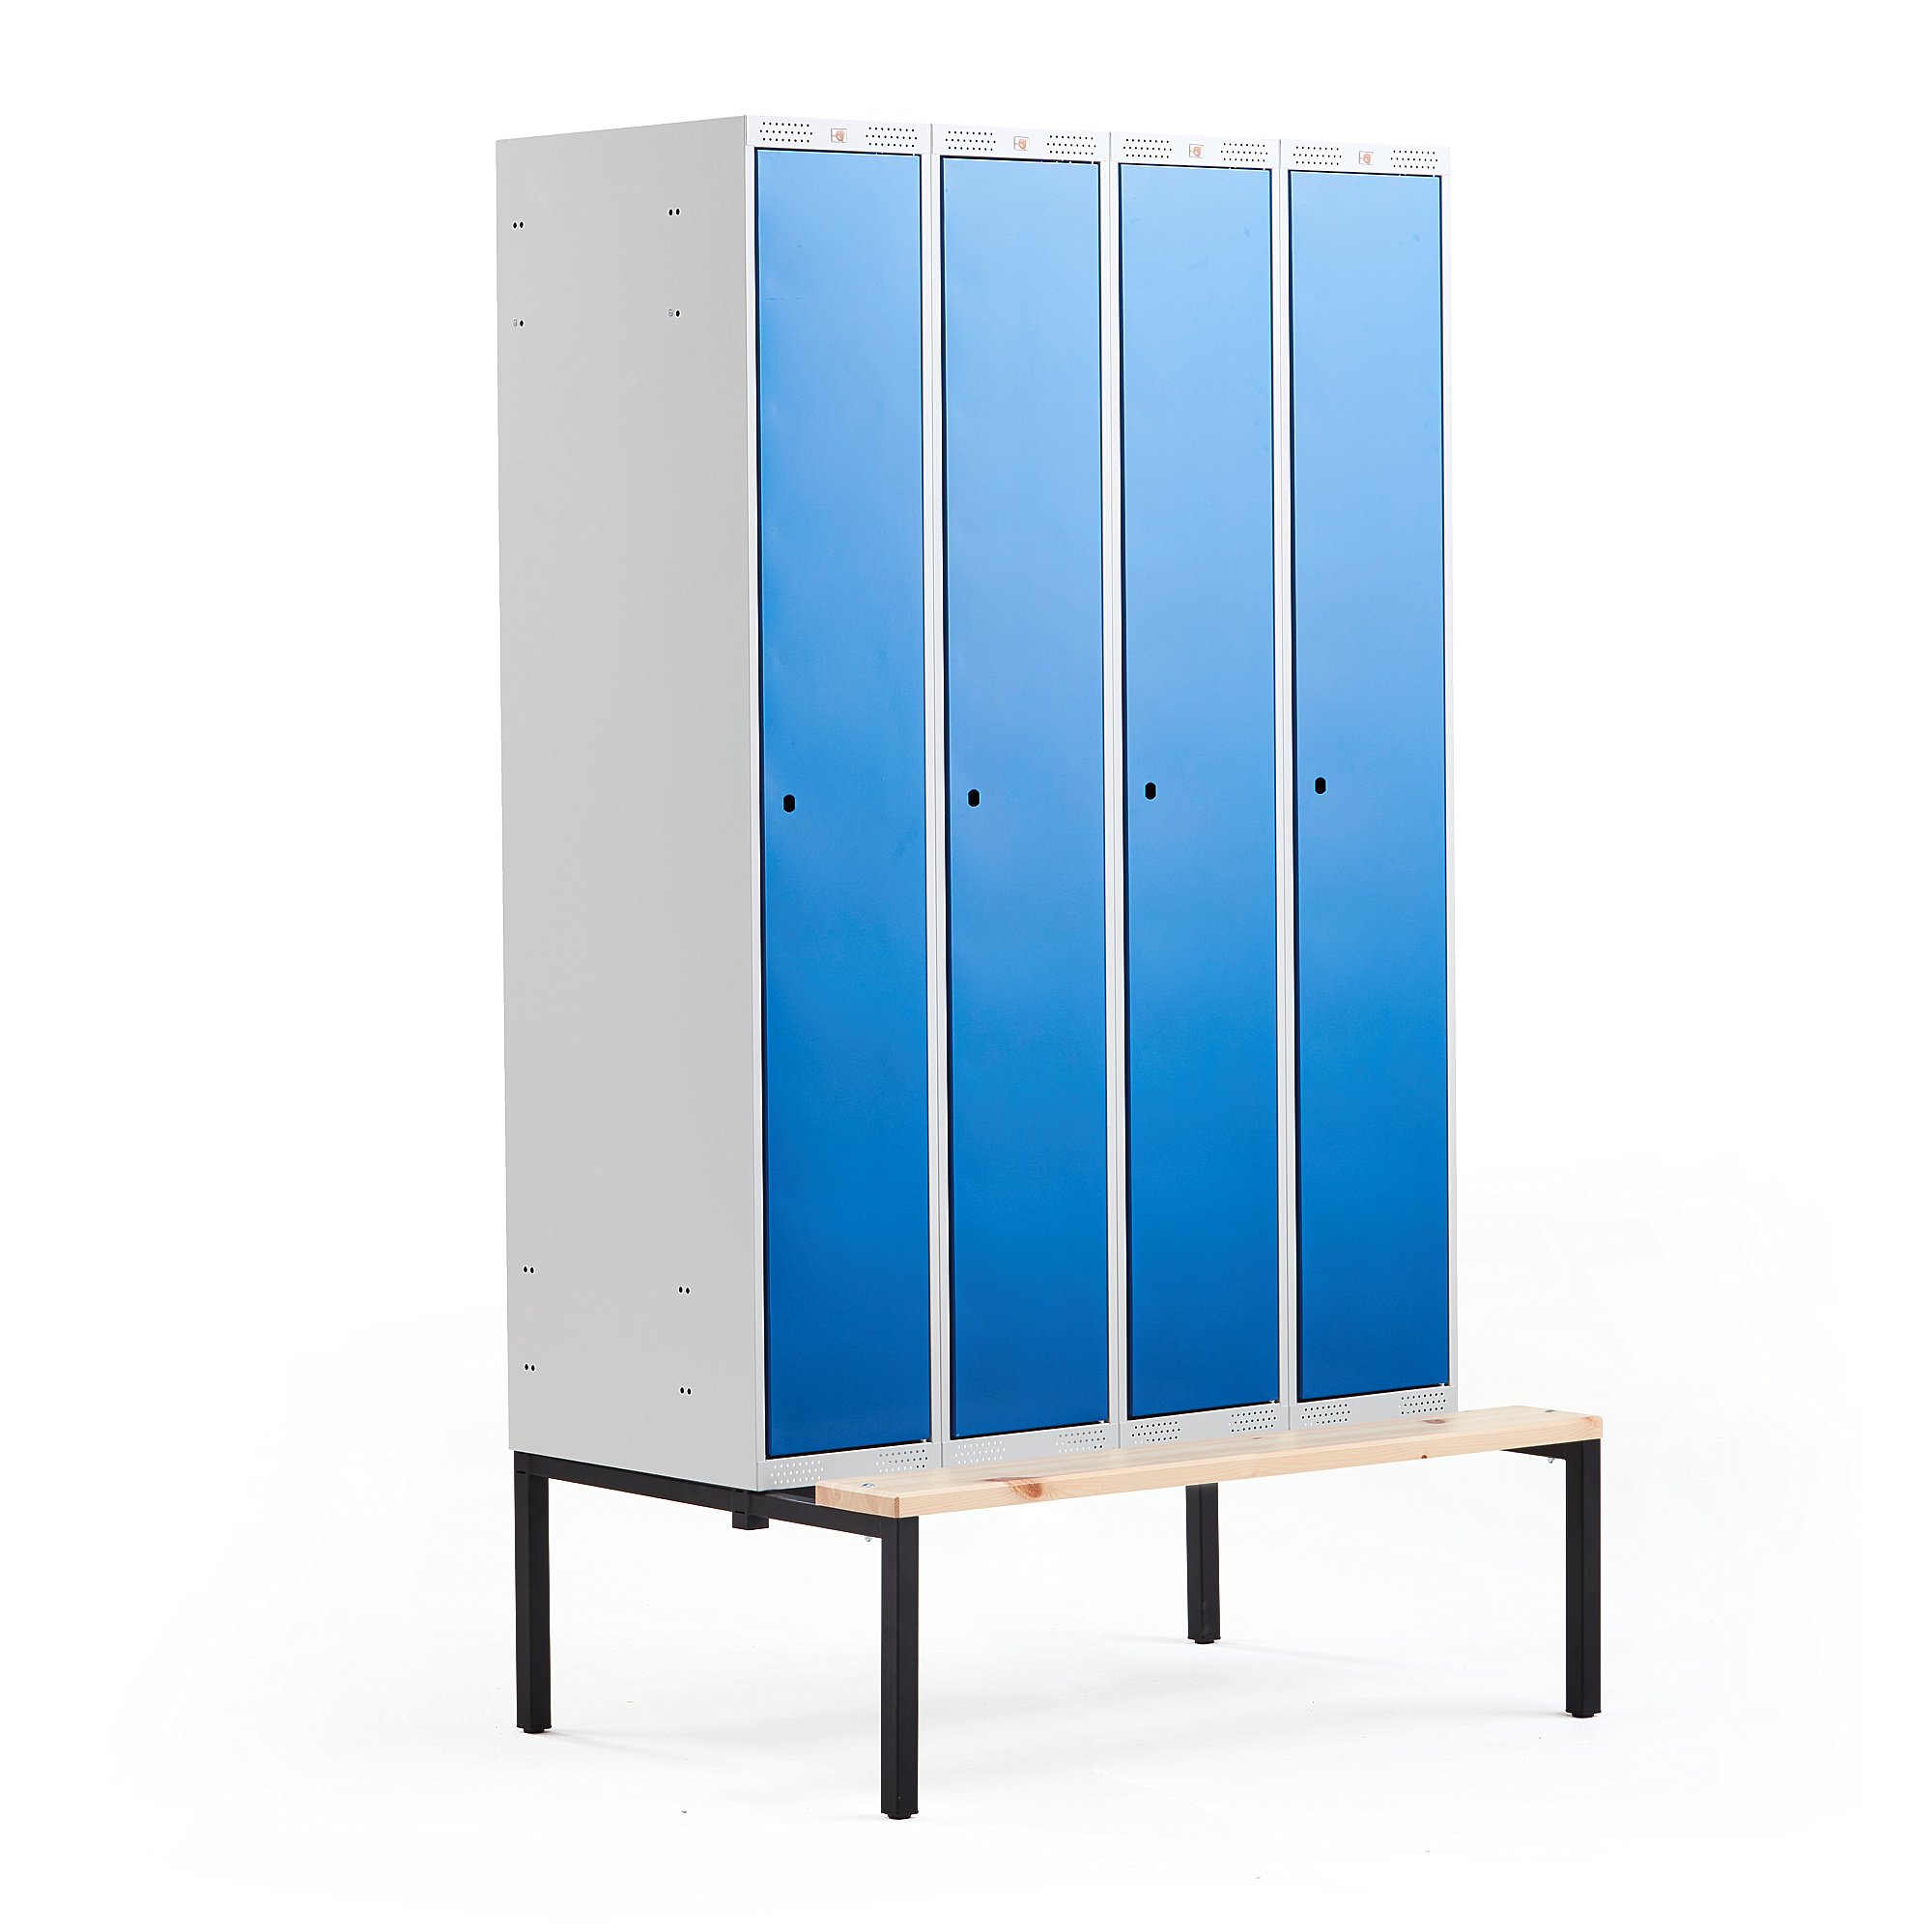 Šatní skříňka CLASSIC, s lavicí, 4 sekce, 2120x1200x550 mm, modré dveře